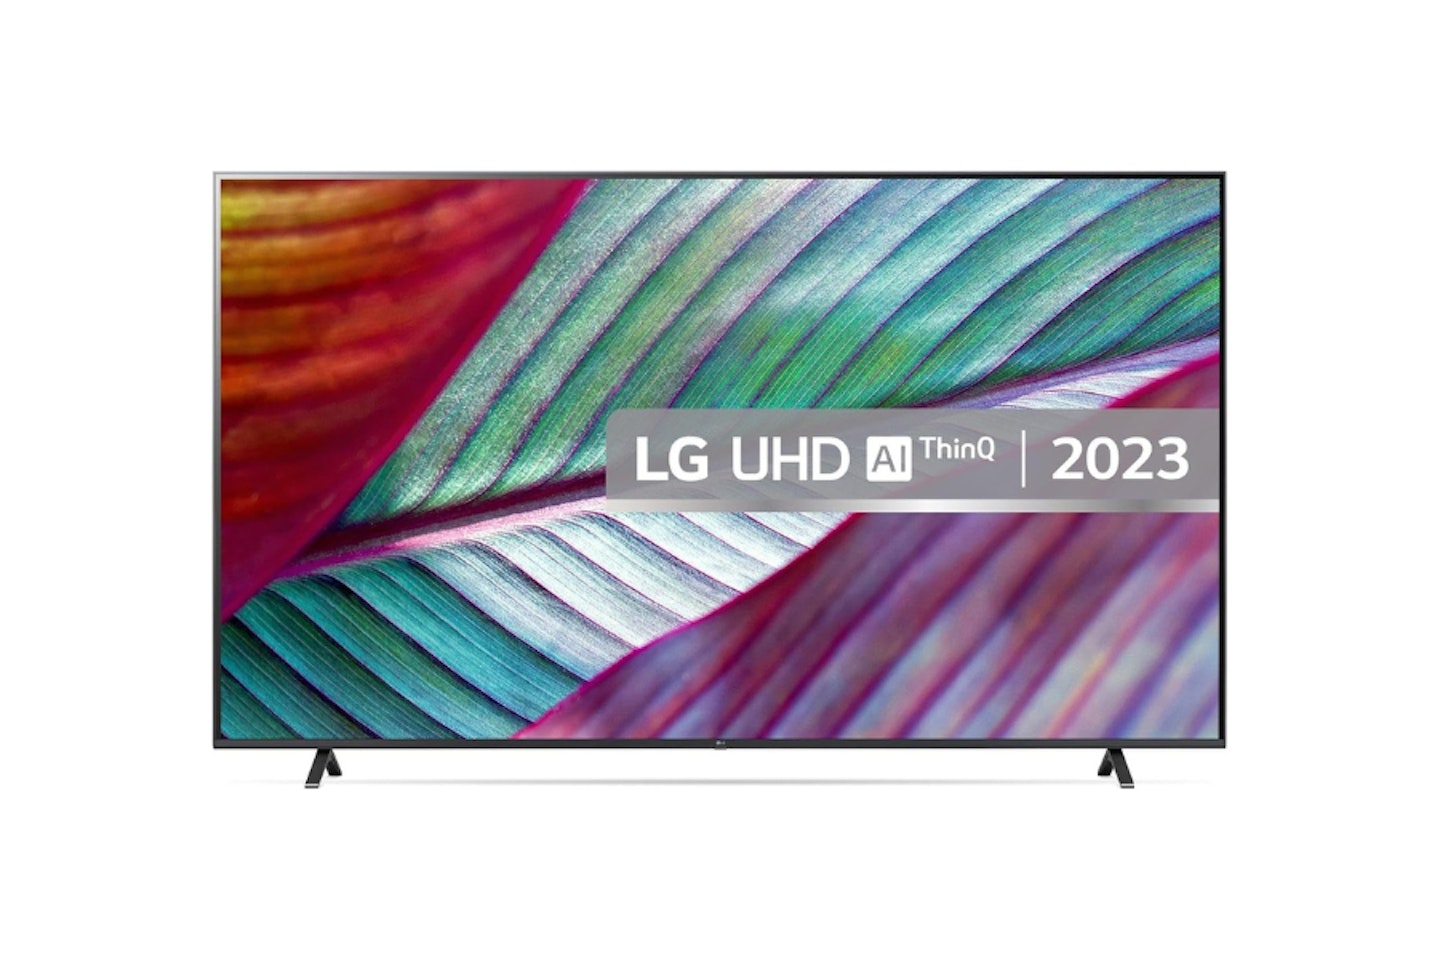 LG LED UR75 43" 4K Smart TV